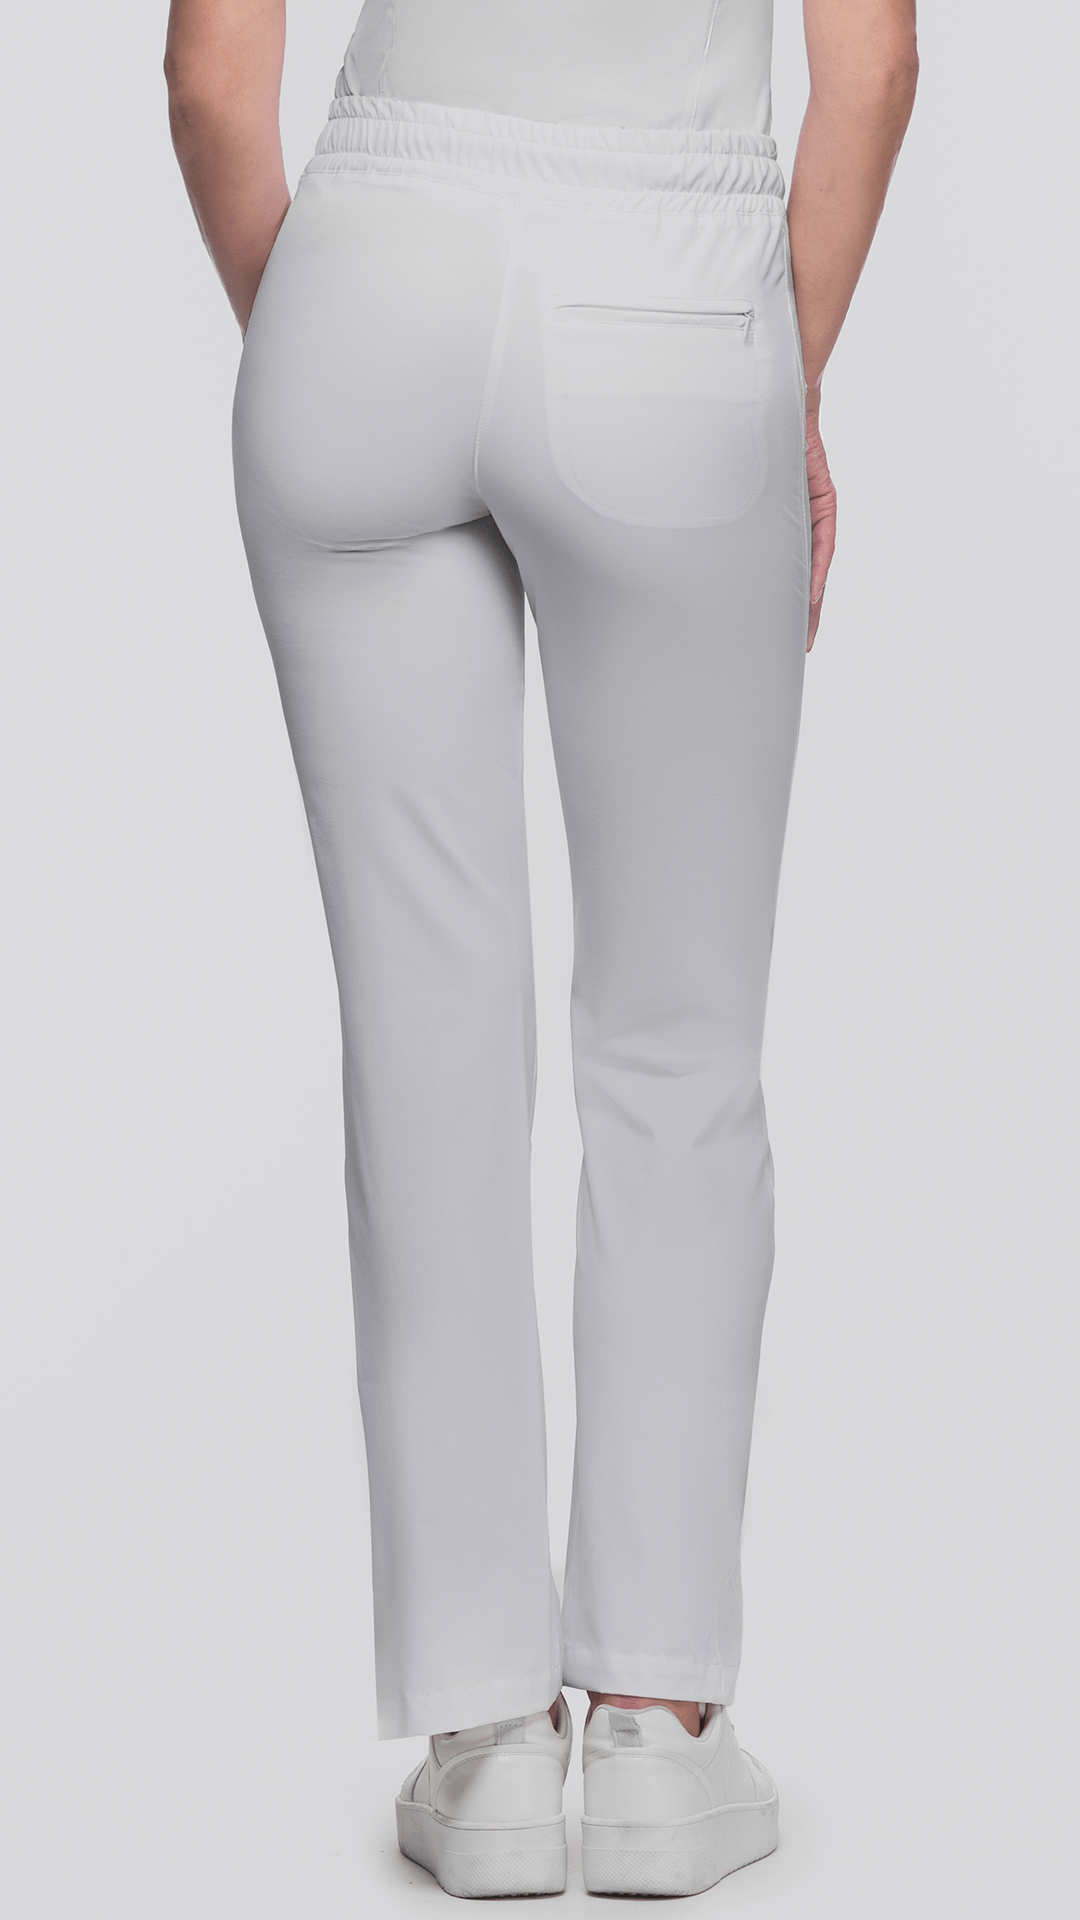 Kanaus® Pants Classic Deep White | Dama - Kanaus